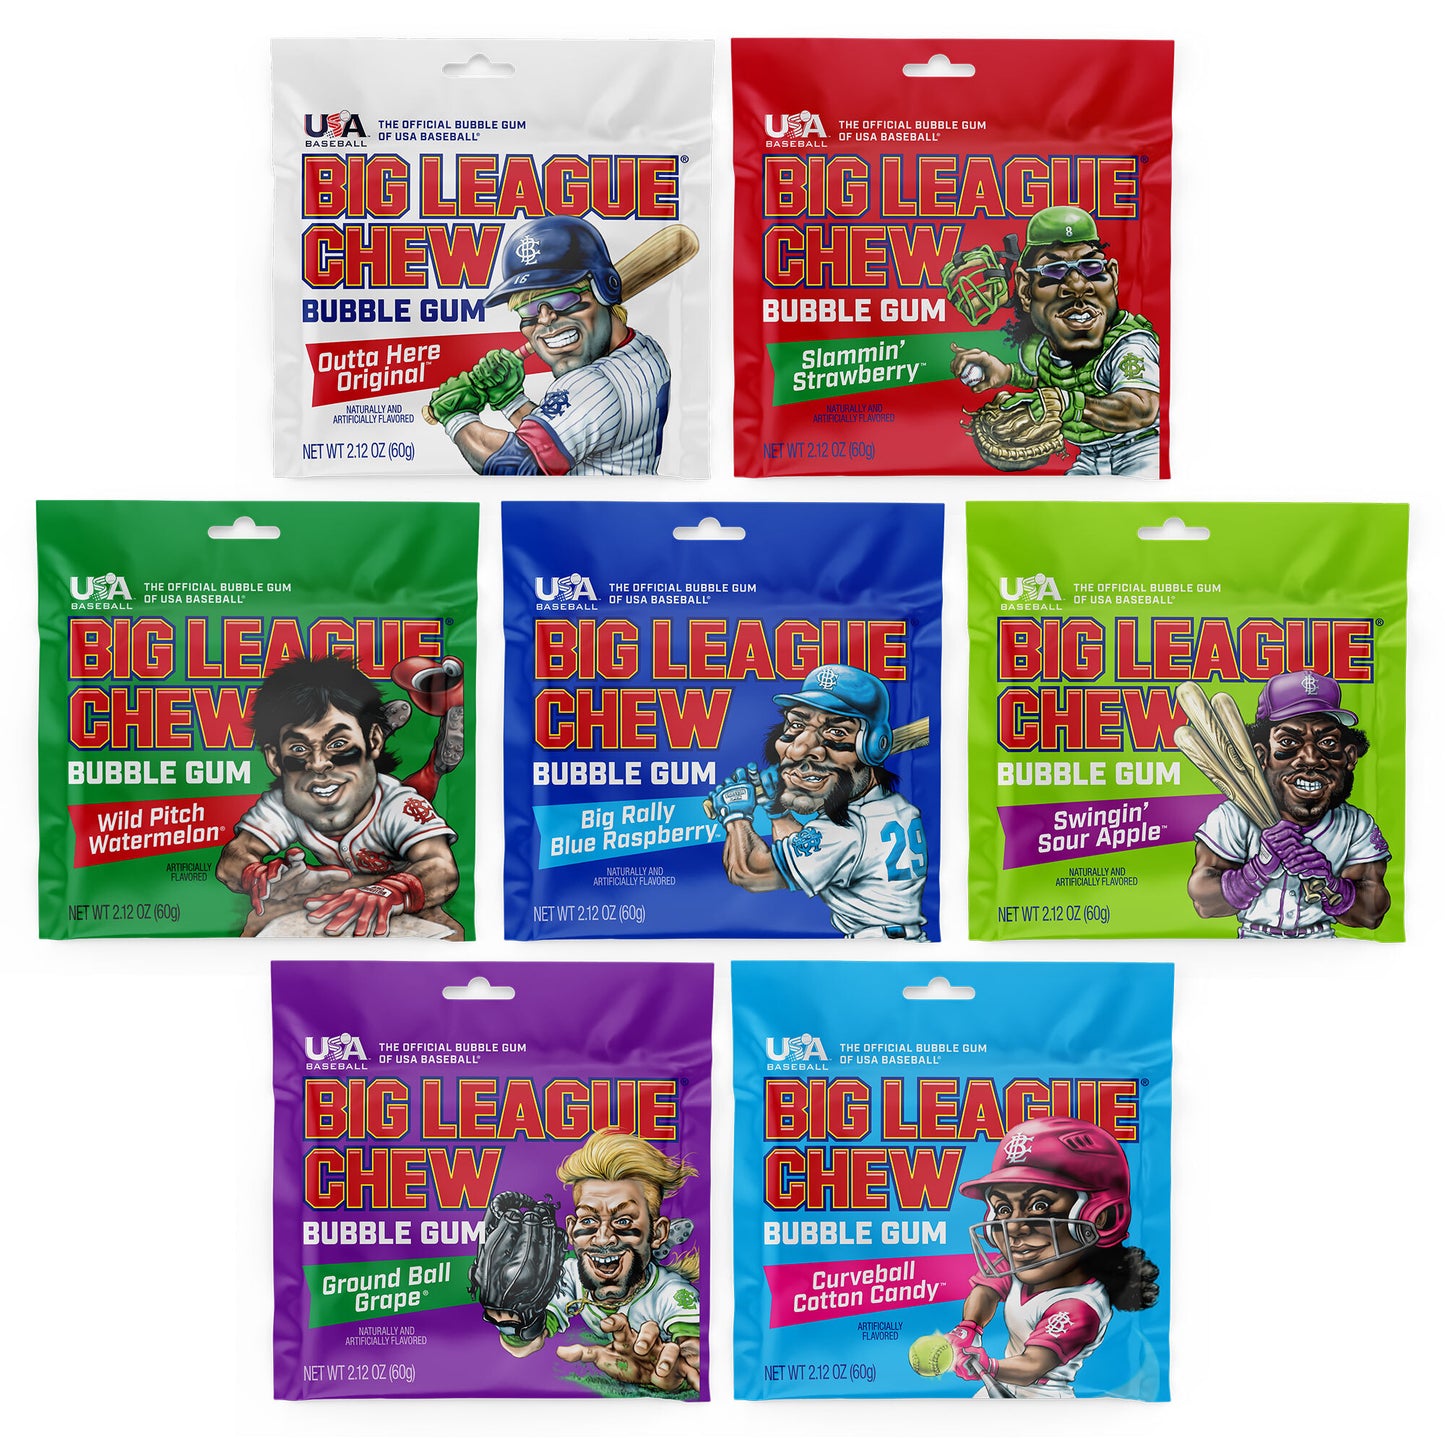 Big League Chew Bubble Gum 12-Pack